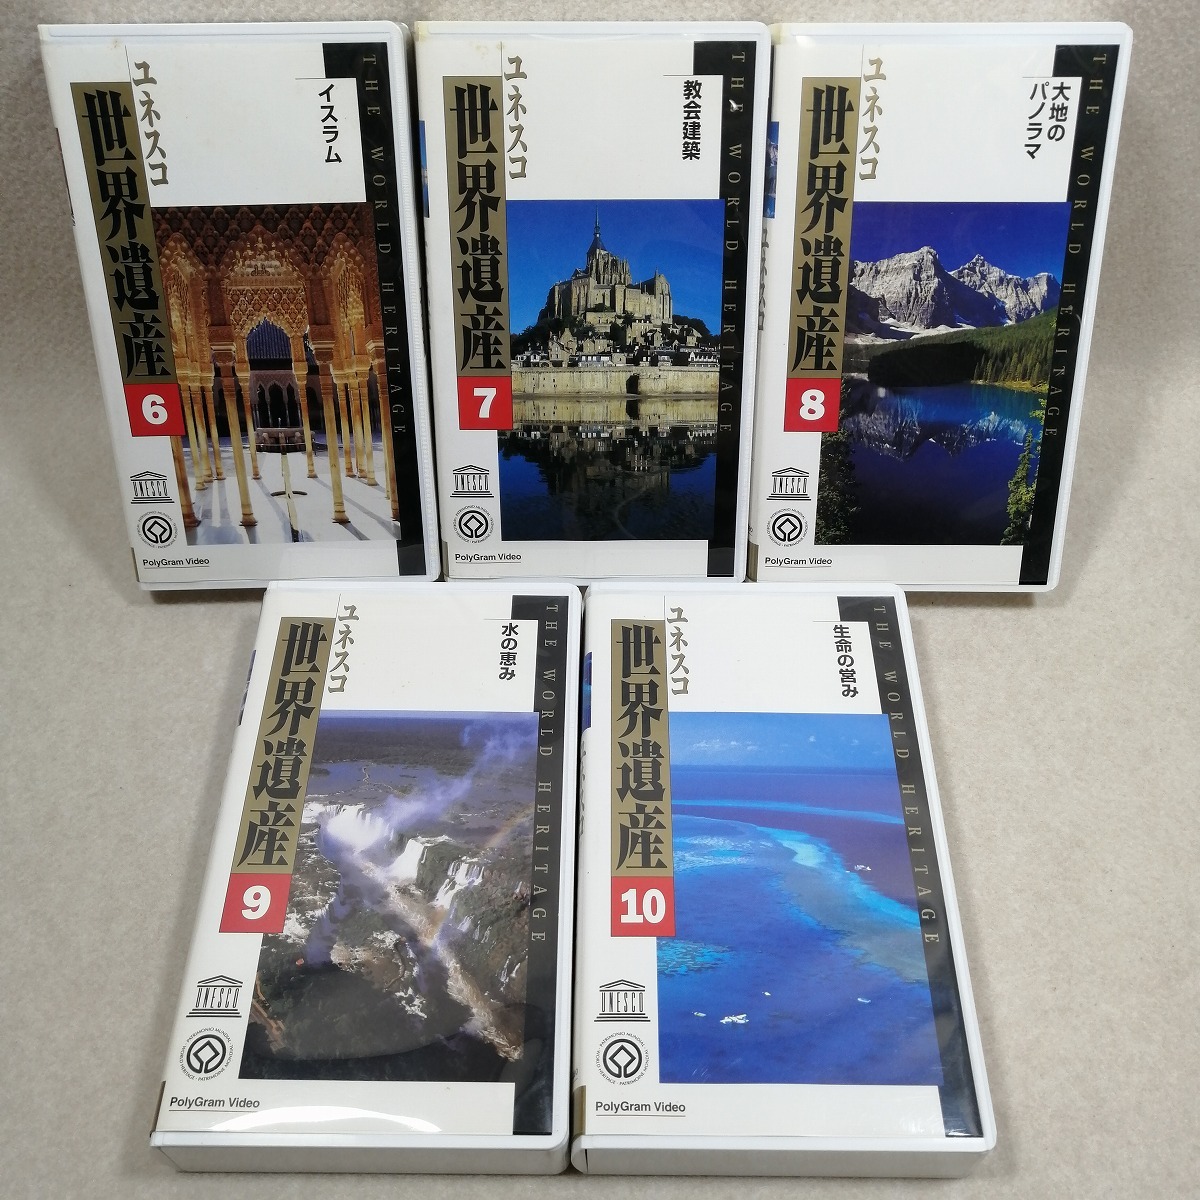 *0 видео полное собрание сочинений yunesko World Heritage все 10 шт. комплект VHS You can специальный полки имеется 0*